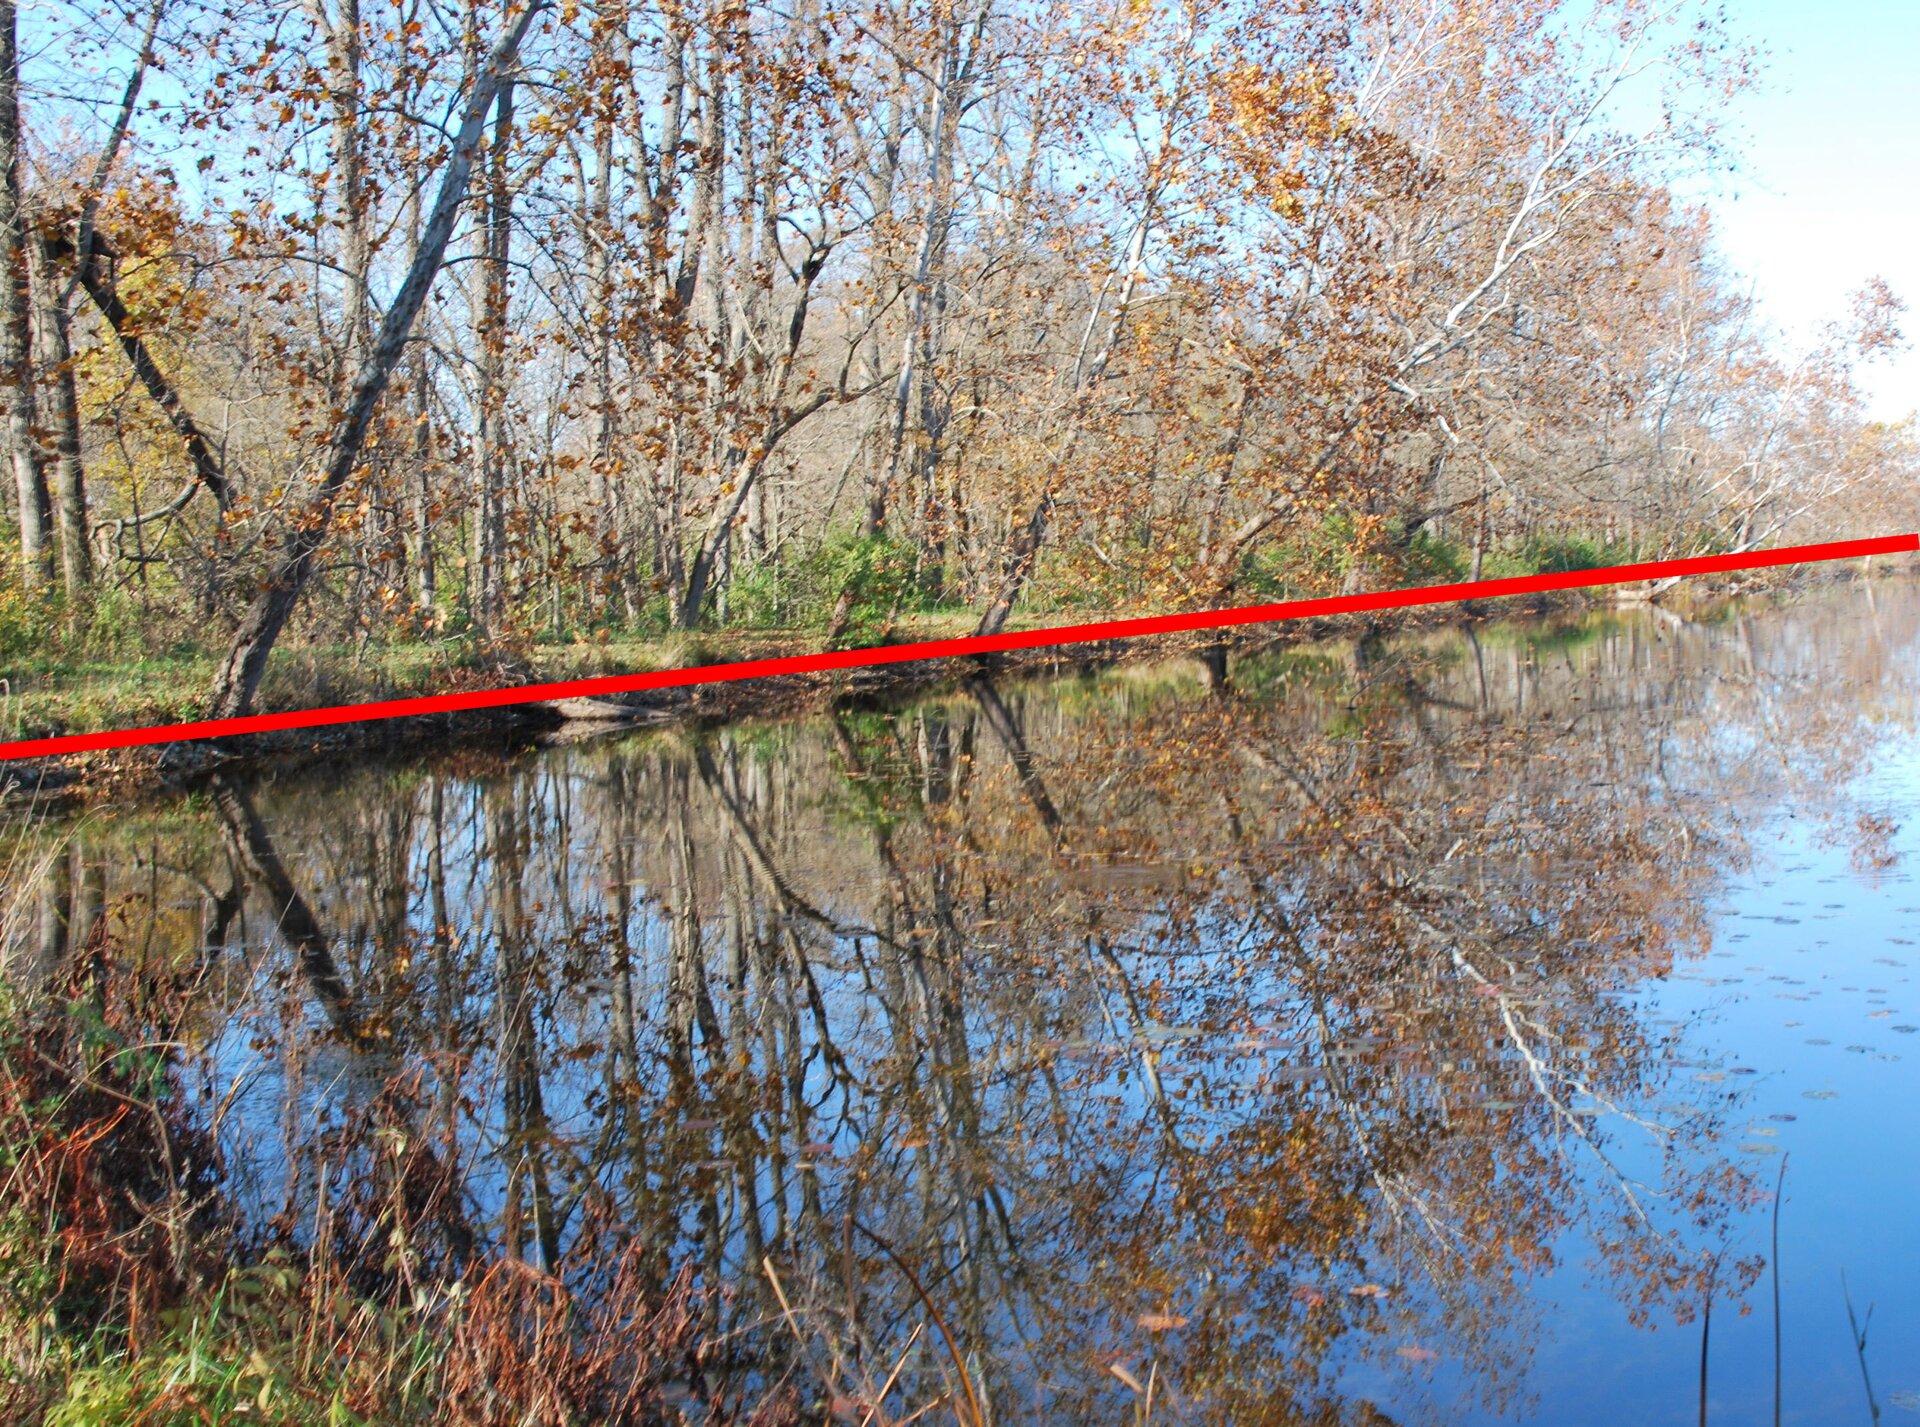 Zdjęcie drzew rosnących wzdłuż brzegu rzeki i odbicie tych drzew w wodzie z poprowadzoną osią symetrii.